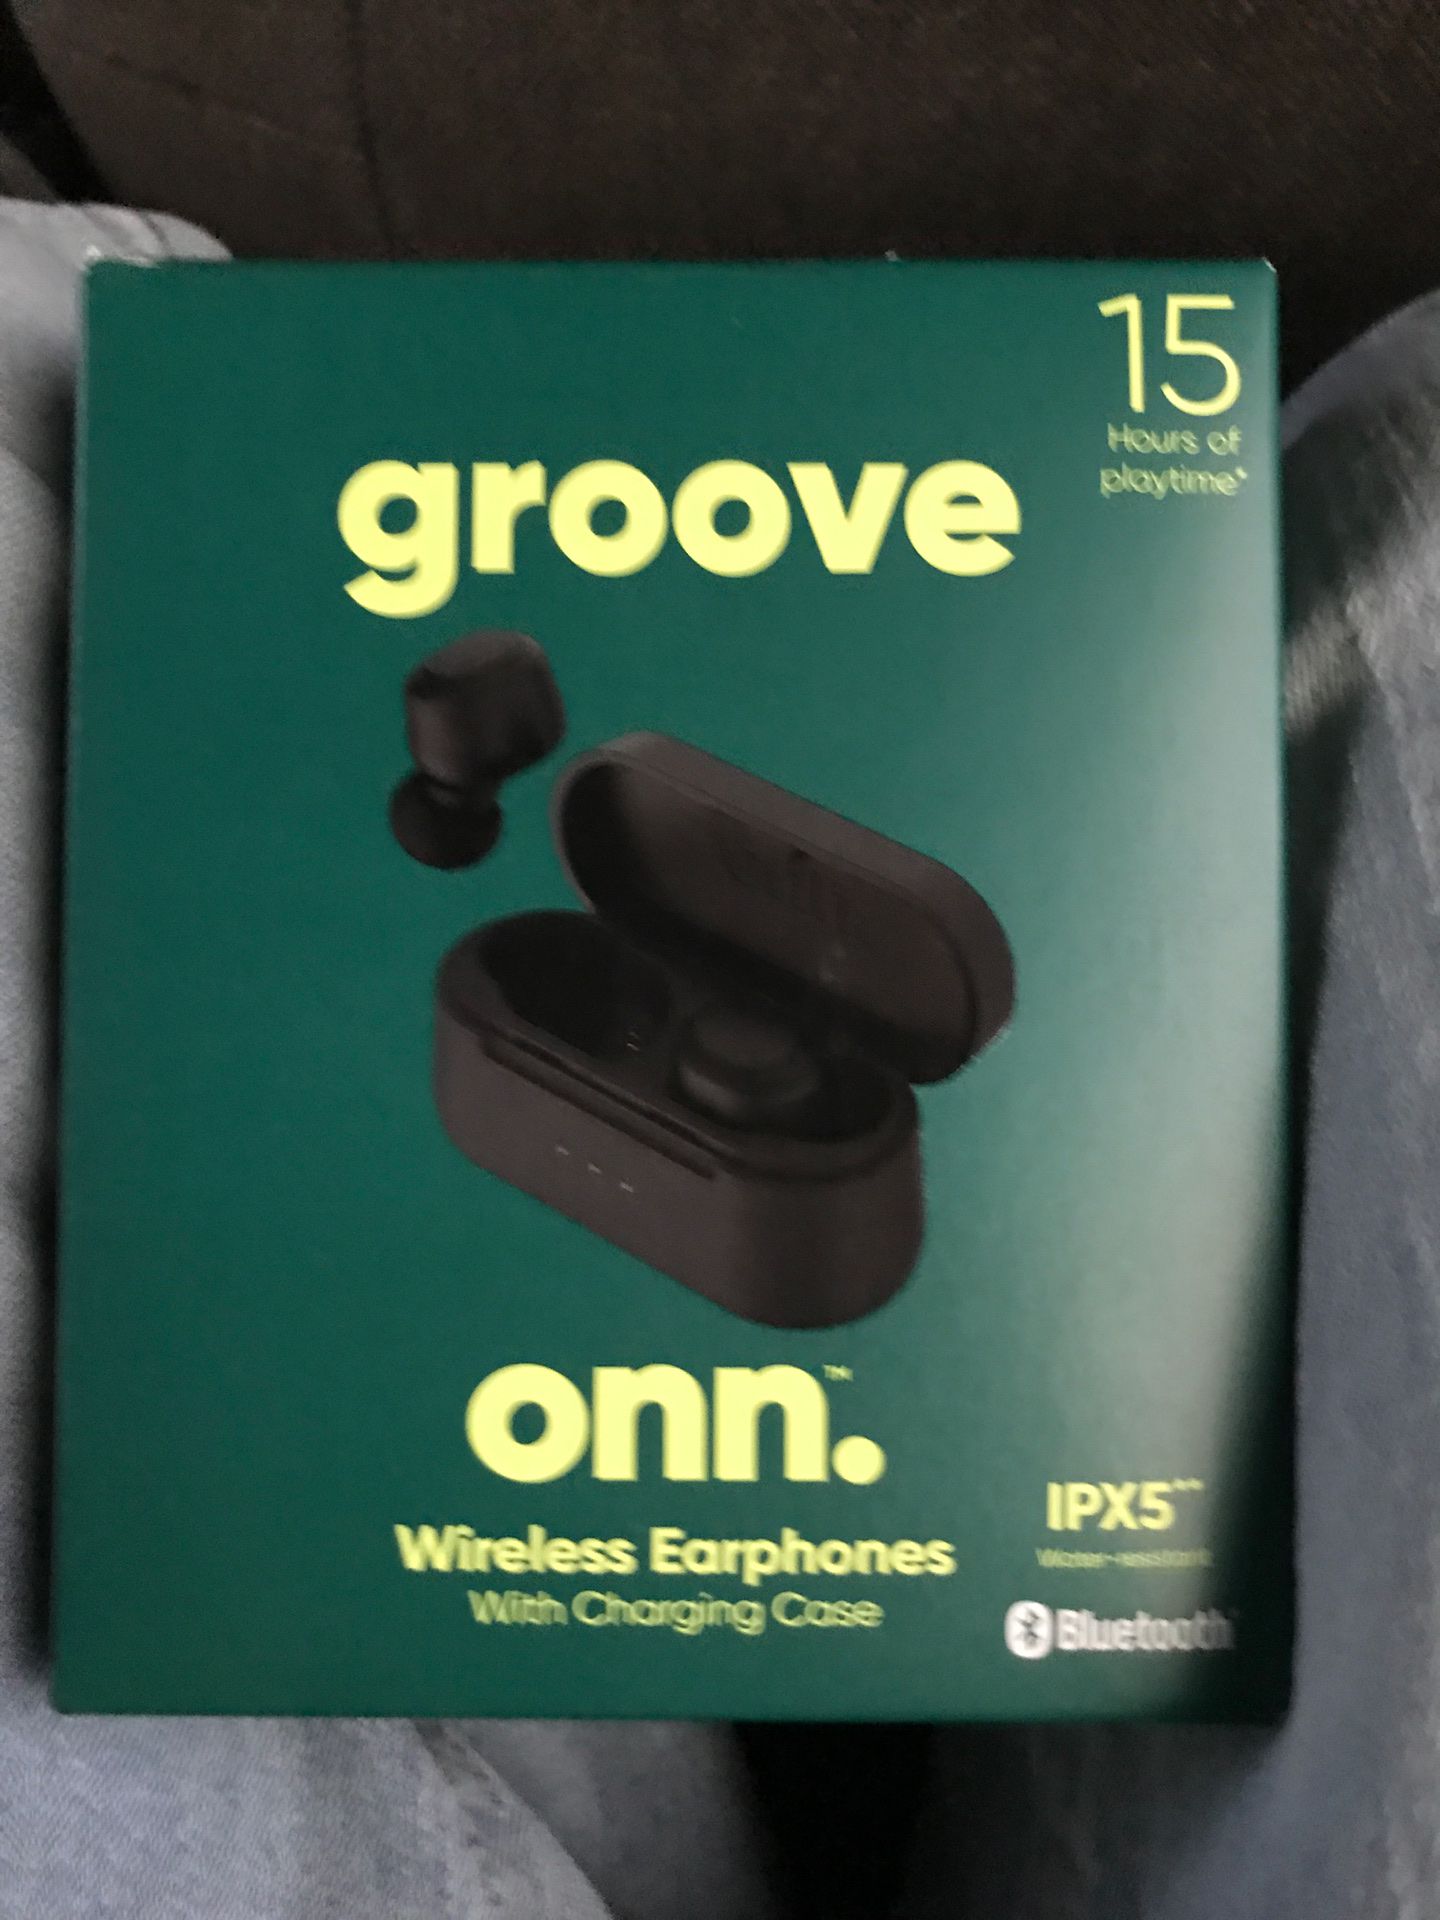 Onn groove wireless earbuds